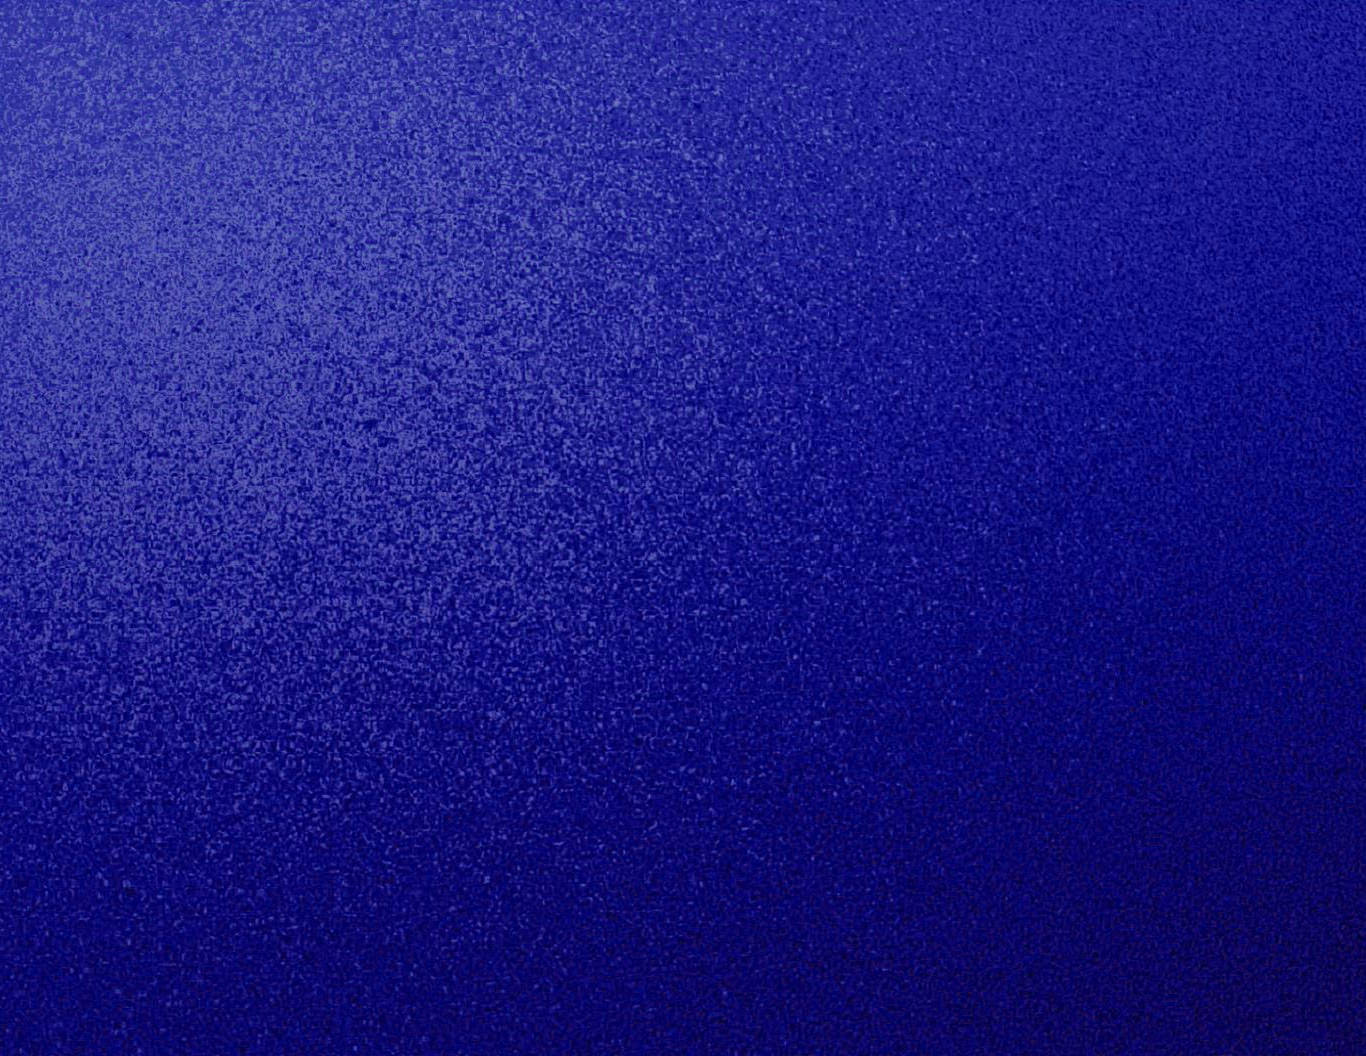 Free Dark Blue Textured Background